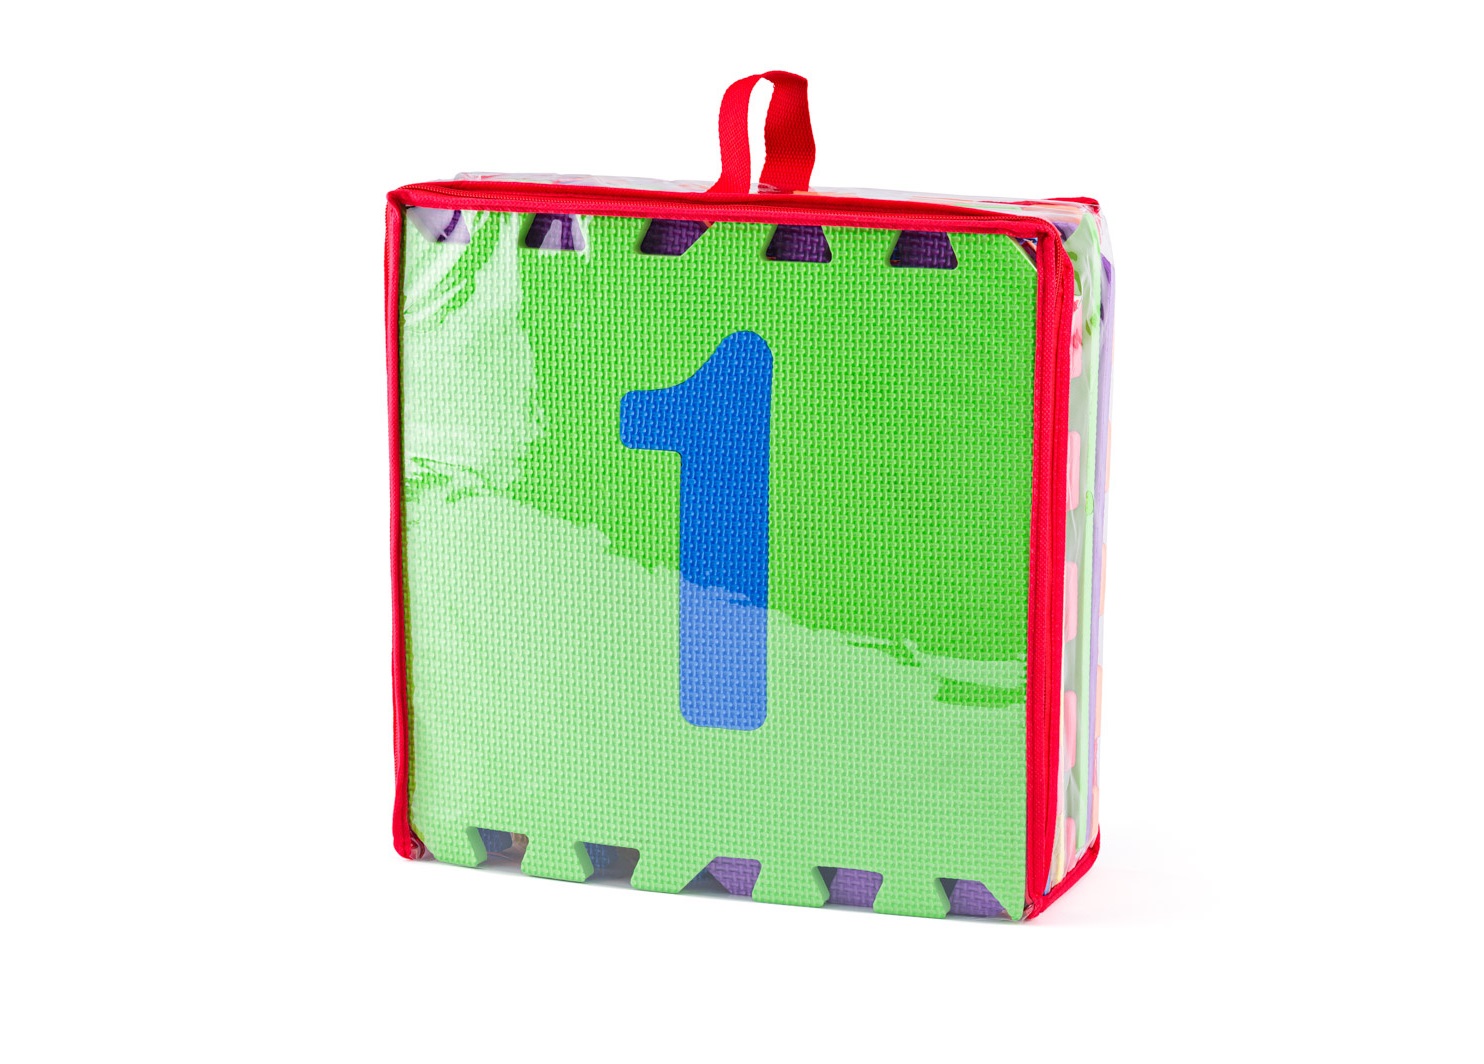 Součástí dodávky je zeleno-červená taška s poutkem a s uzavíráním na zip, kterou využijete pro uskladnění i přenášení puzzlí Plastica 105591629 z místa na místo.